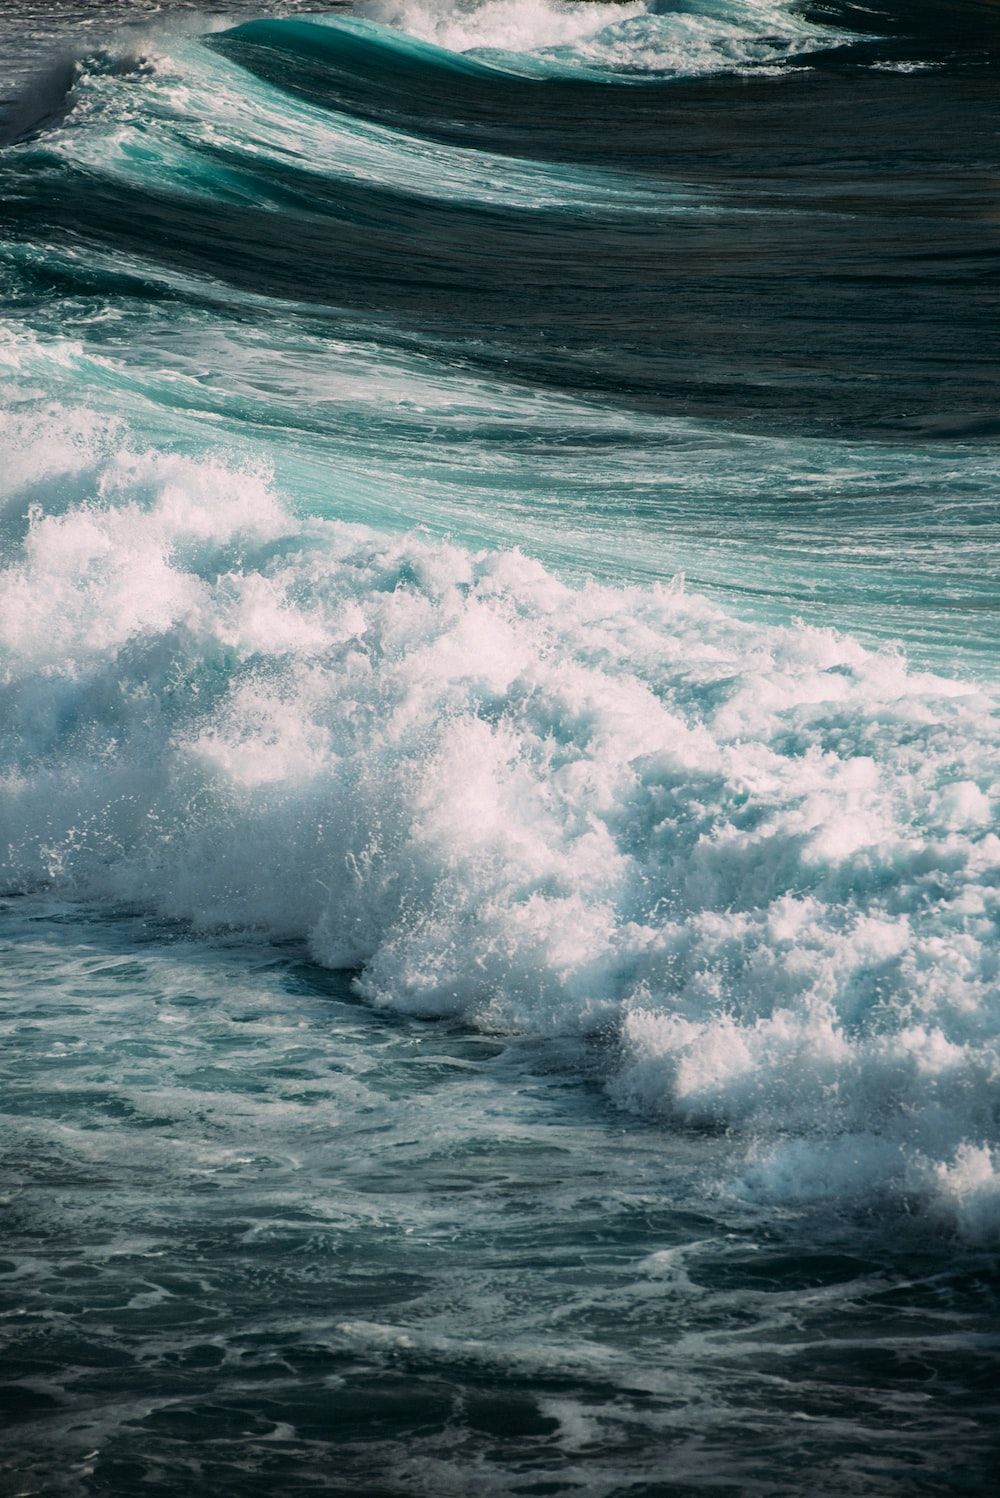 ocean waves crashing on shore during daytime photo